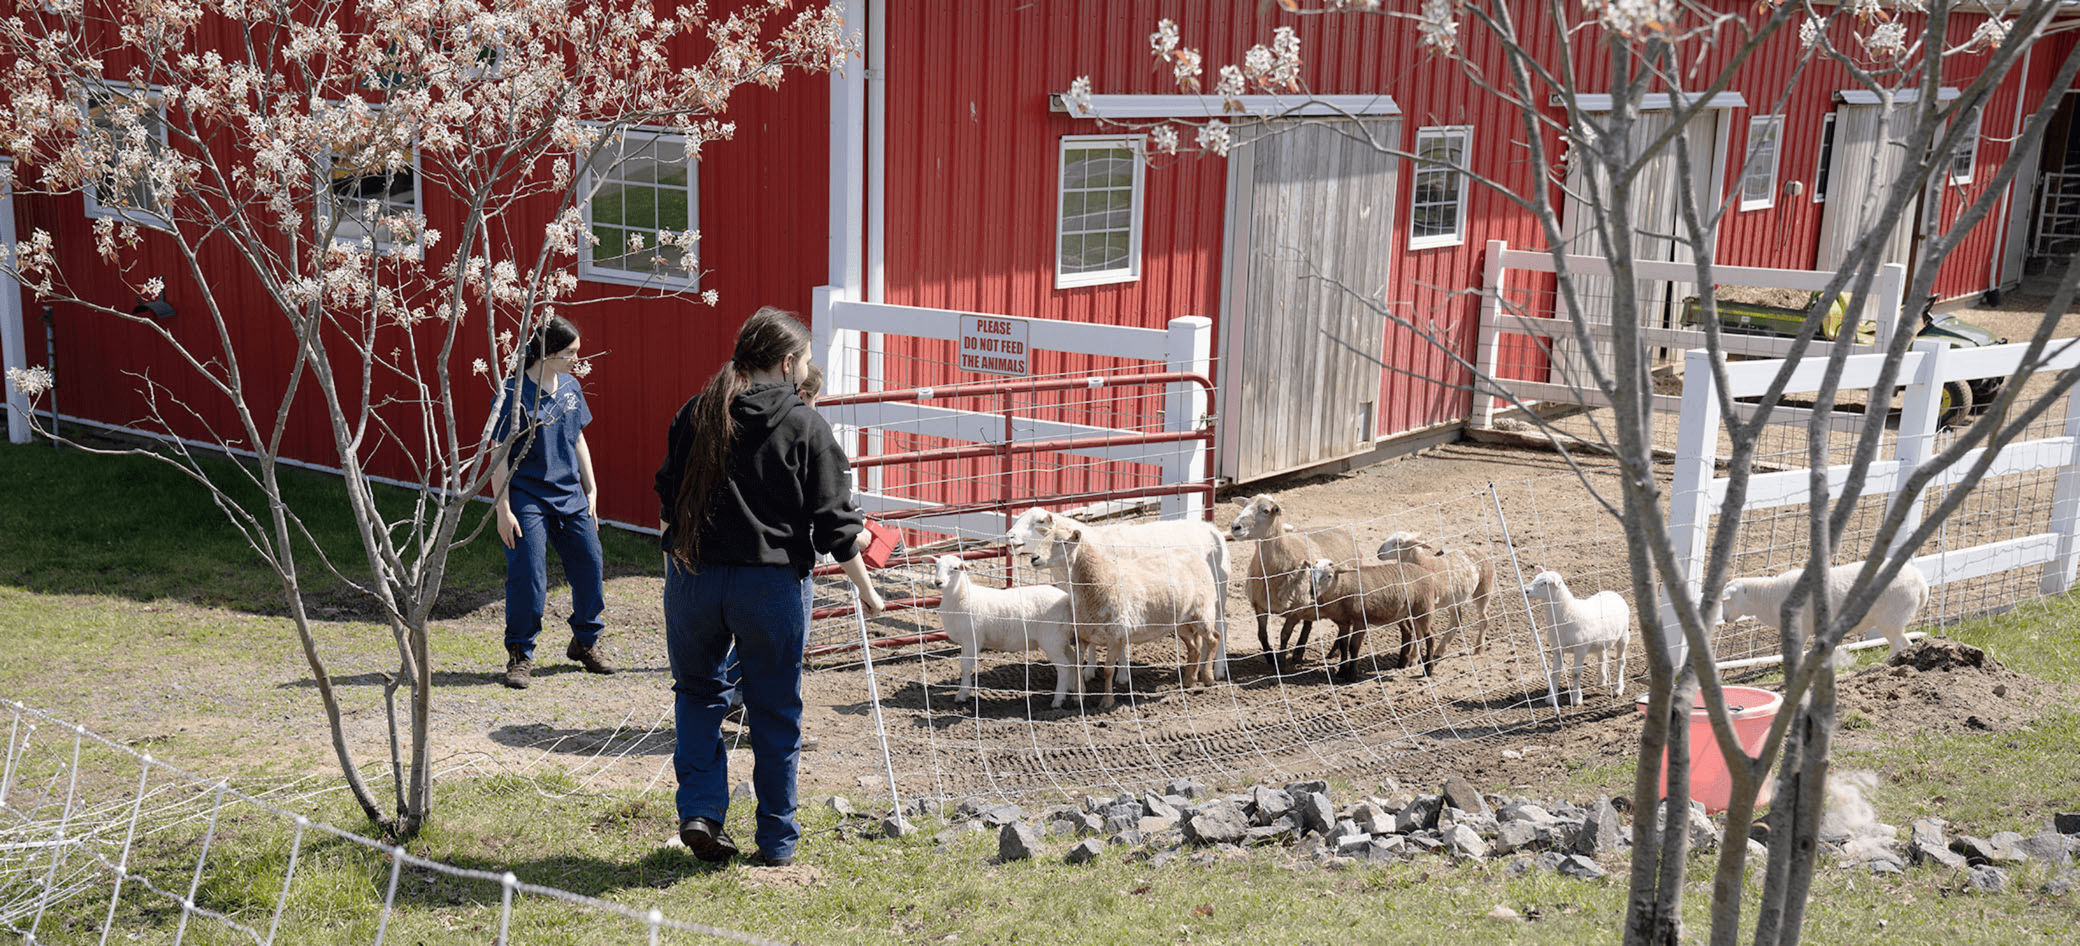 Trois étudiants libèrent un groupe de moutons excités d'un enclos.